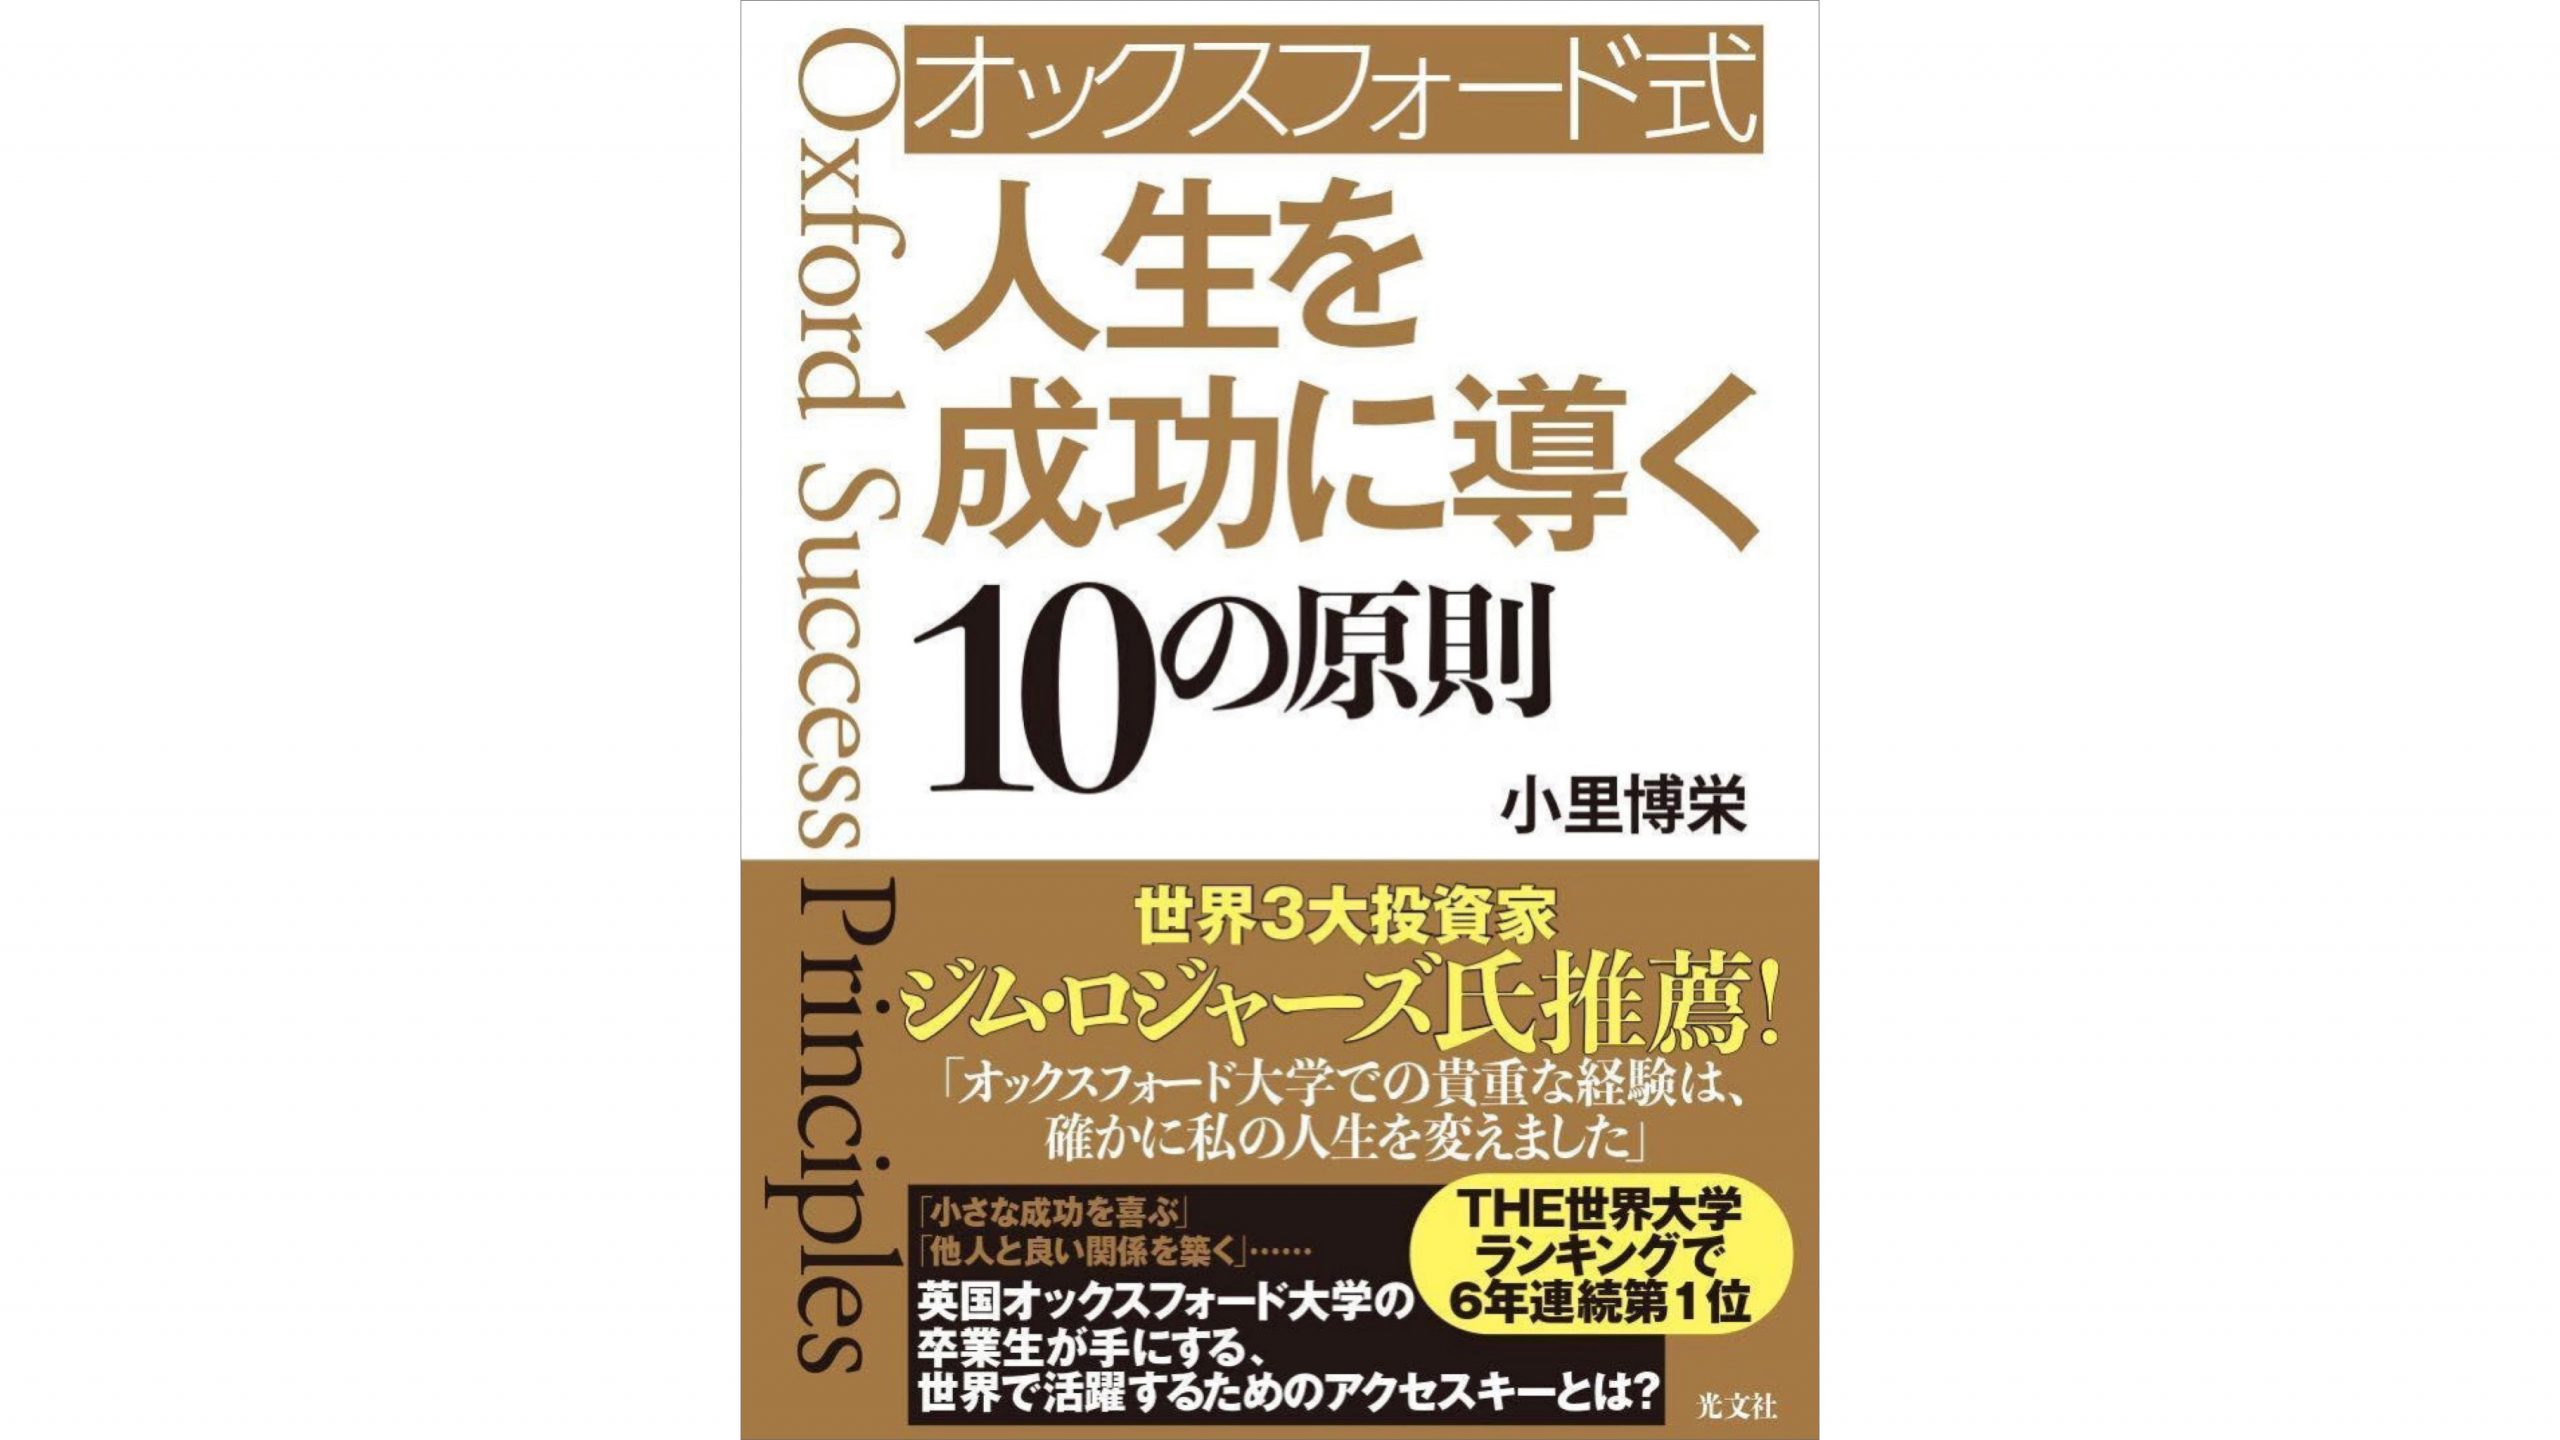 小里博栄(こさとはくえい)さんの書籍『オックスフォード式 人生を成功に導く10の原則』が発売